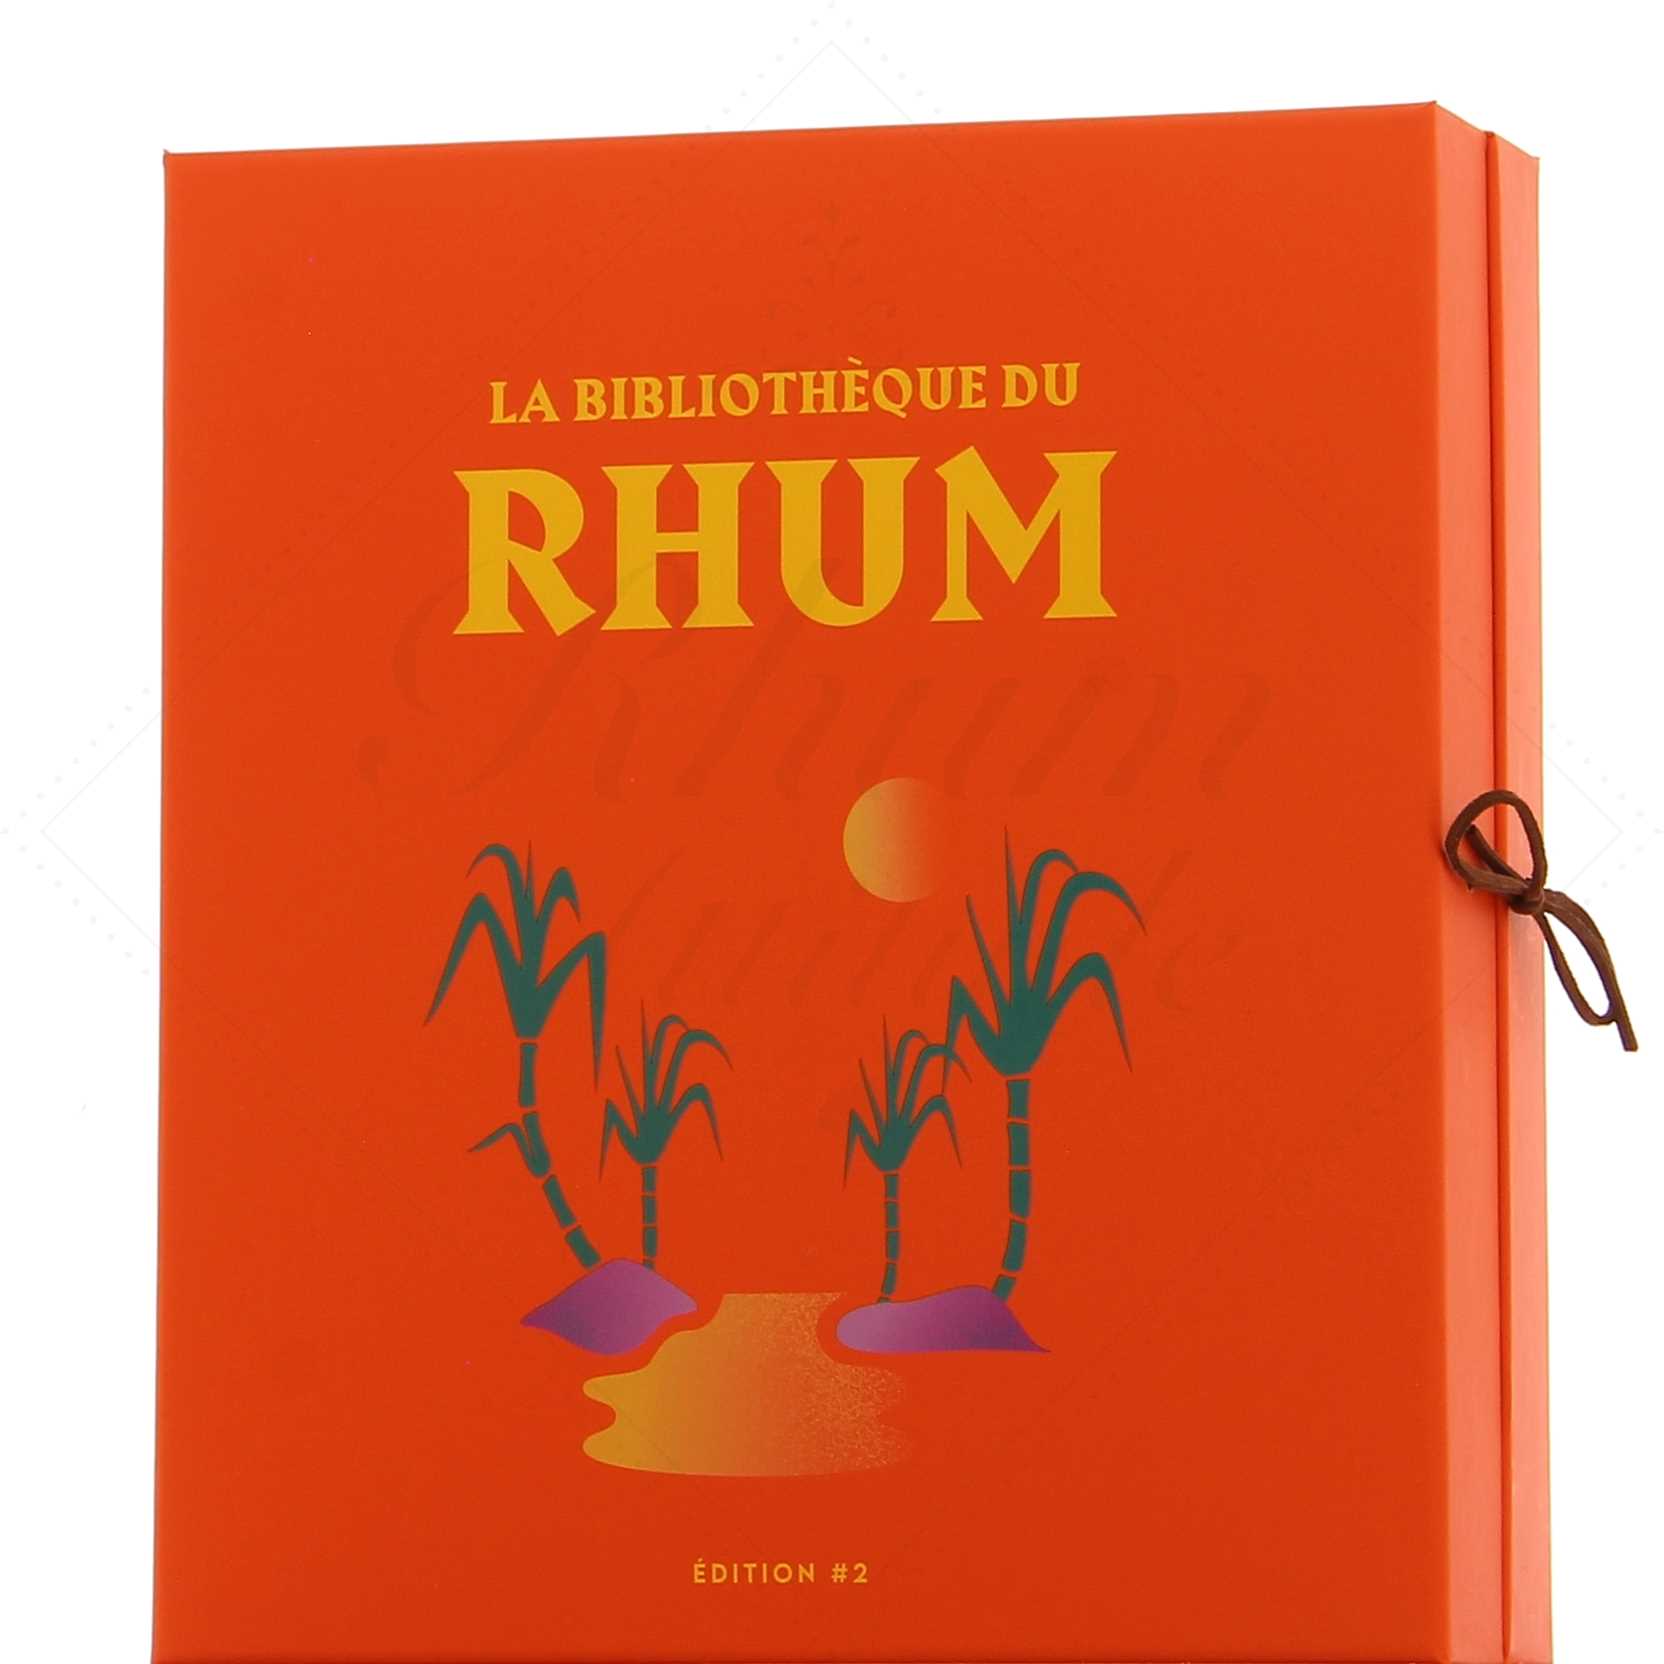 La Bibliothèque du Rhum